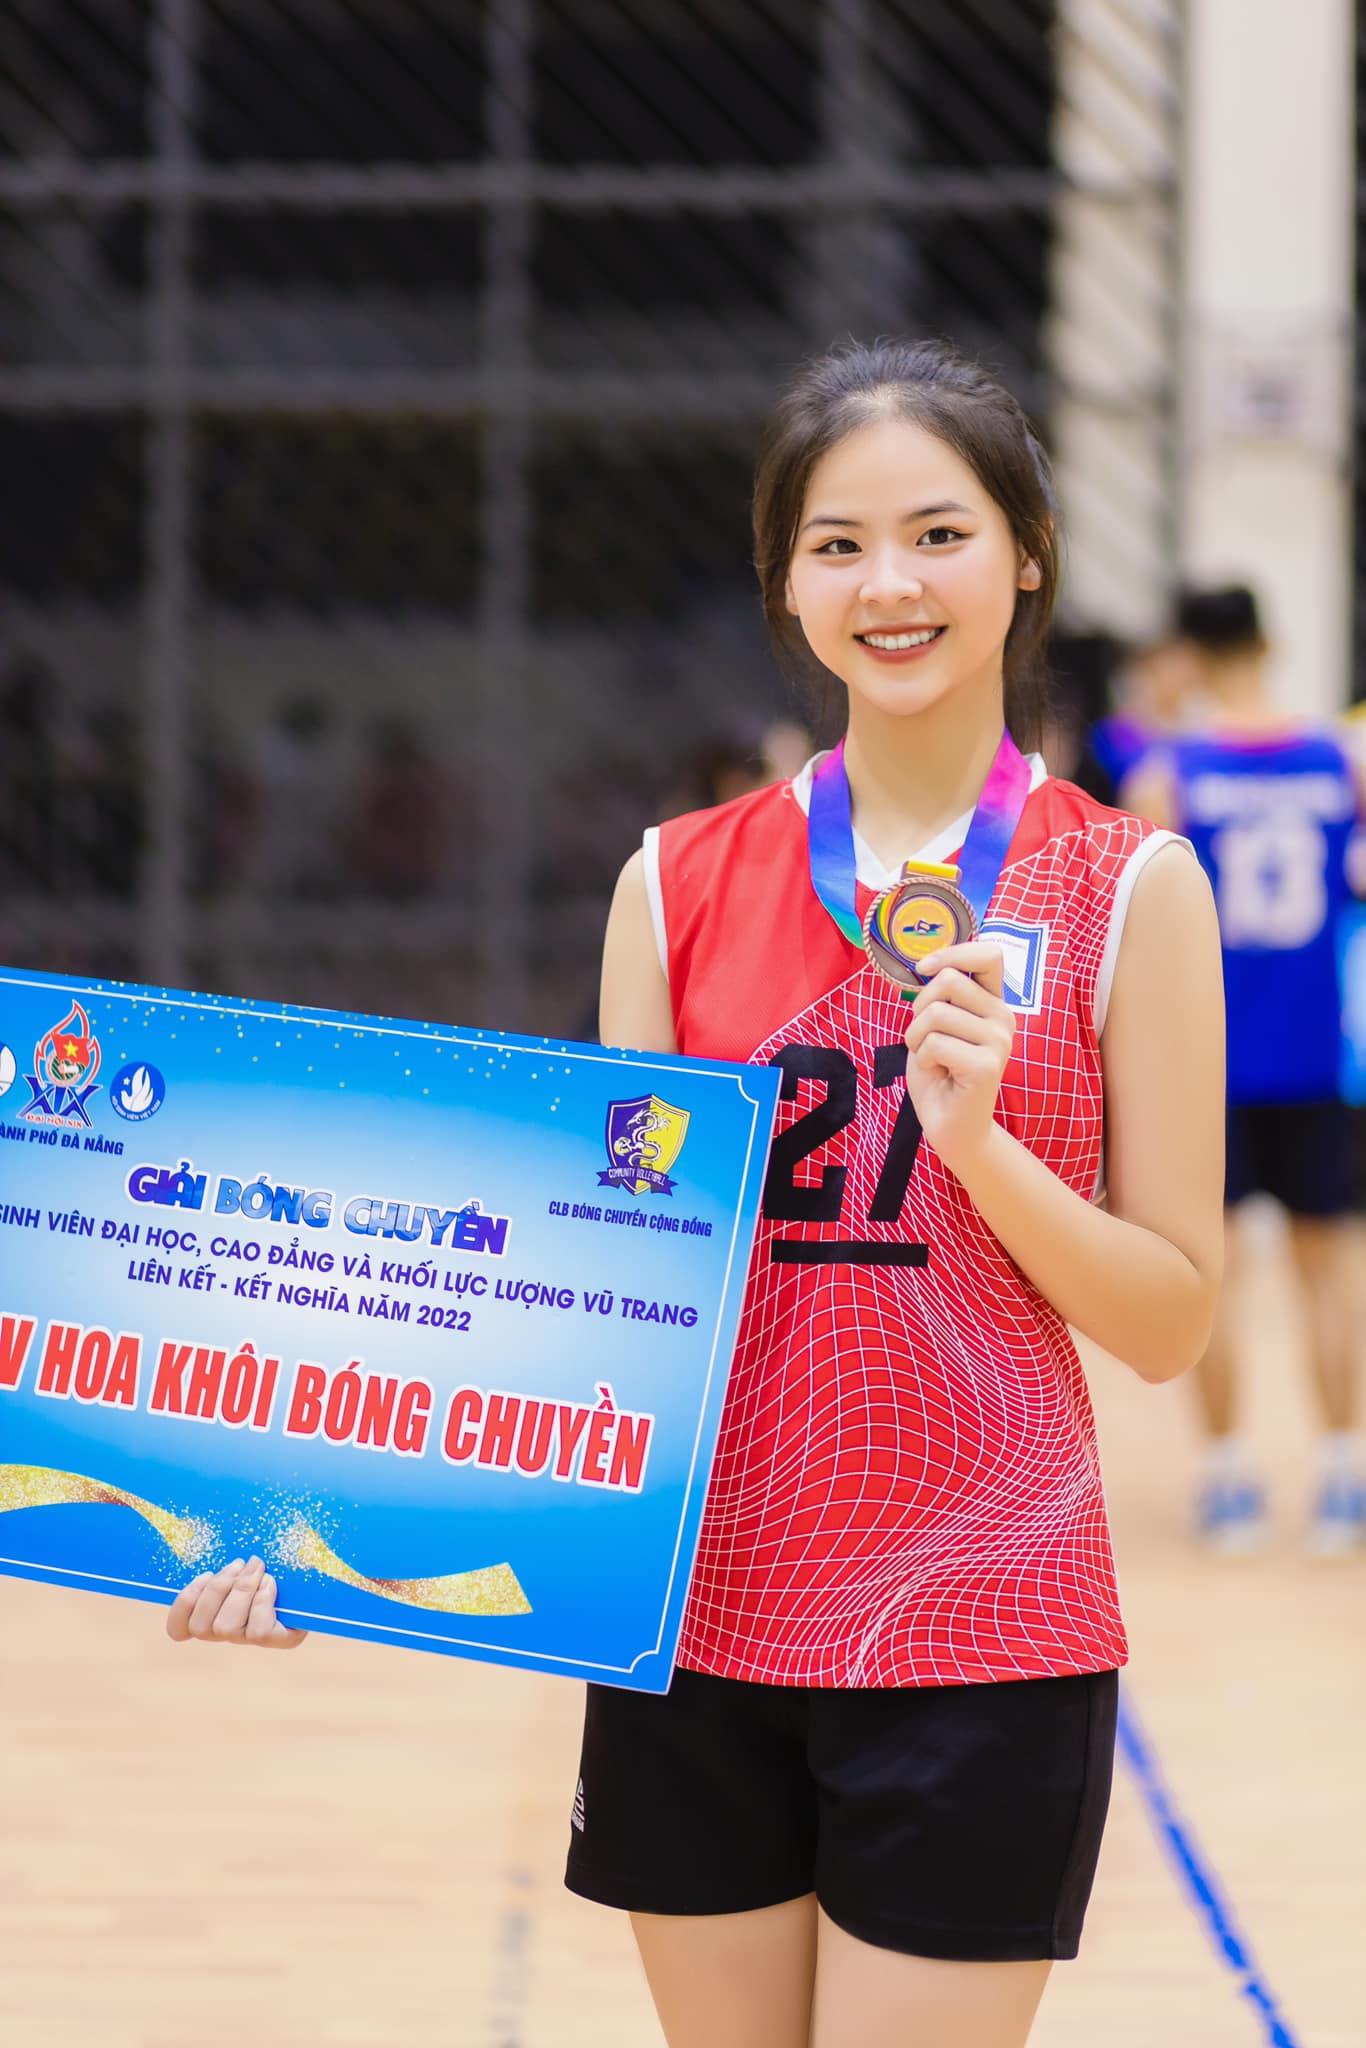 Nhan sắc xinh đẹp mong manh của Hoa khôi bóng chuyền vào chung khảo Miss World Vietnam 2023 - Ảnh 2.